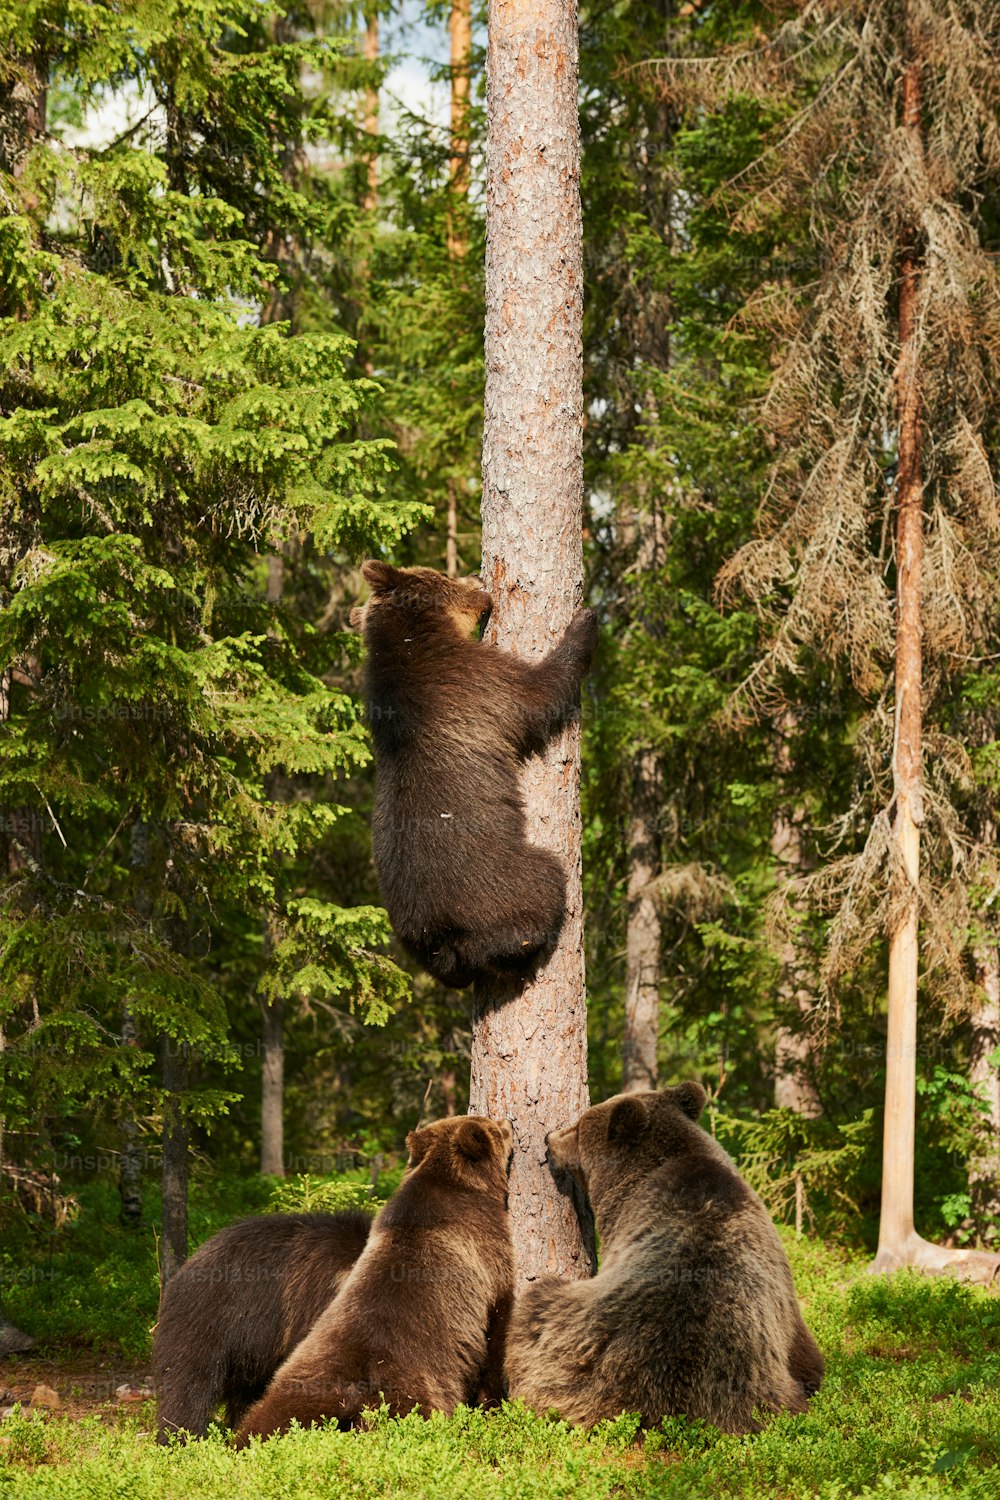 세 마리의 큰 강아지와 함께 있는 암컷 불곰, 그 중 하나는 나무를 기어 올라갑니다.